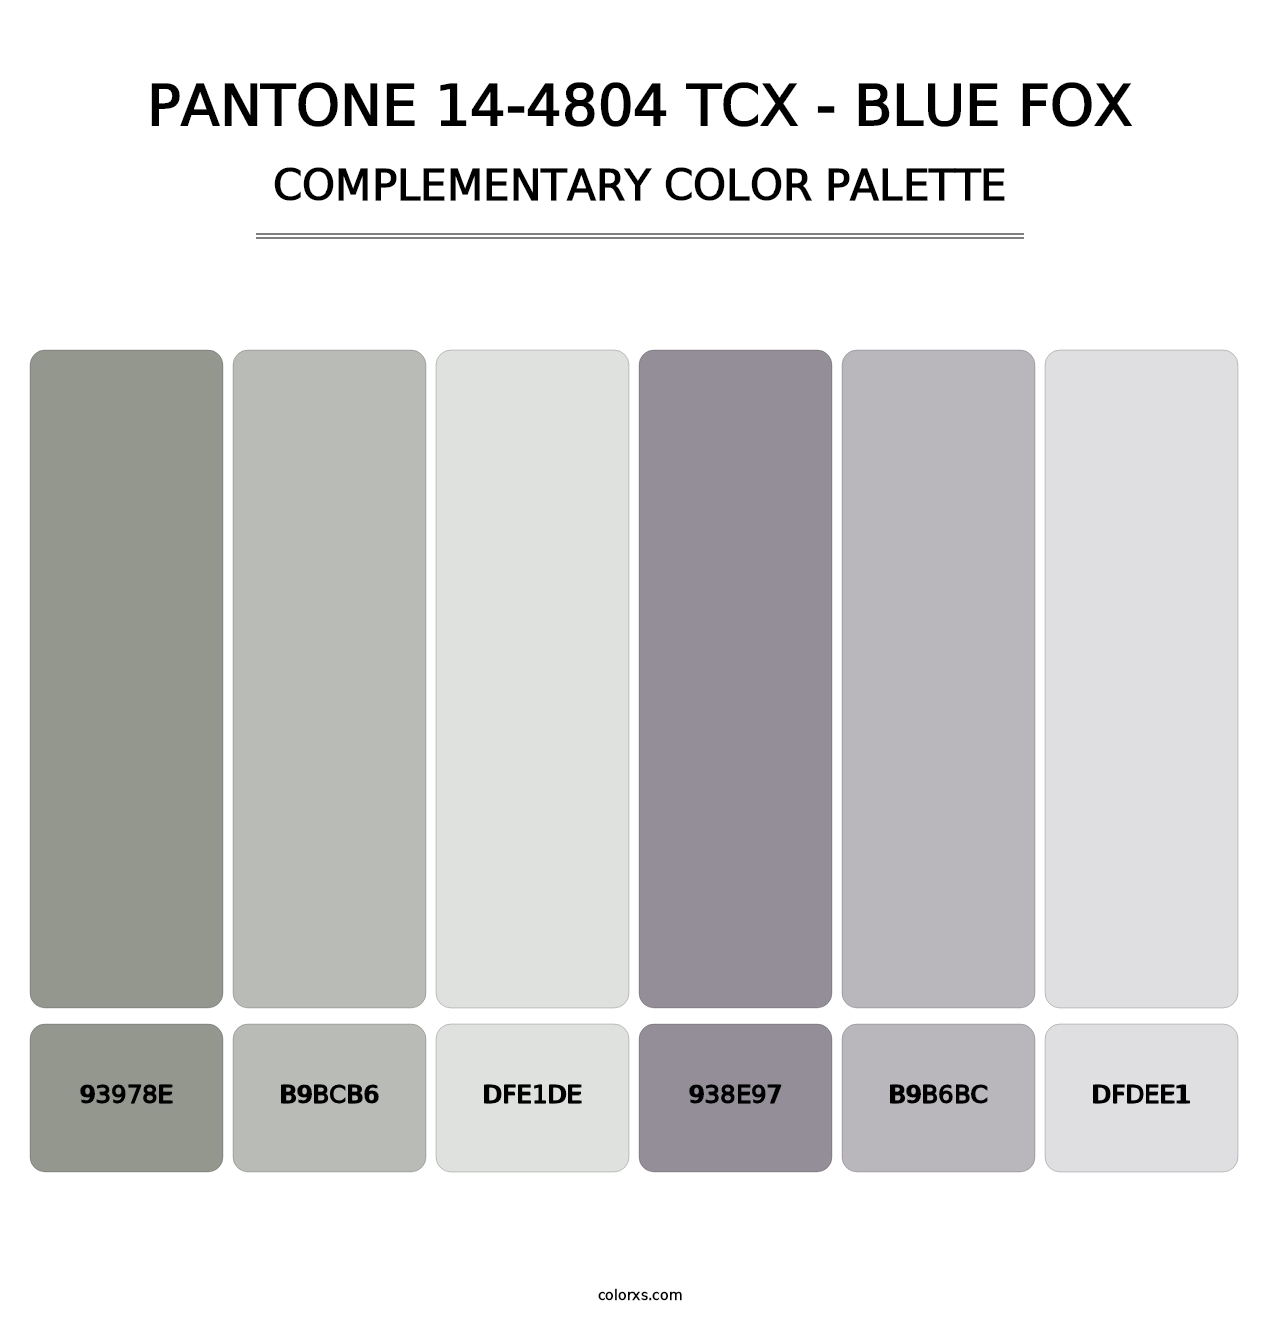 PANTONE 14-4804 TCX - Blue Fox - Complementary Color Palette